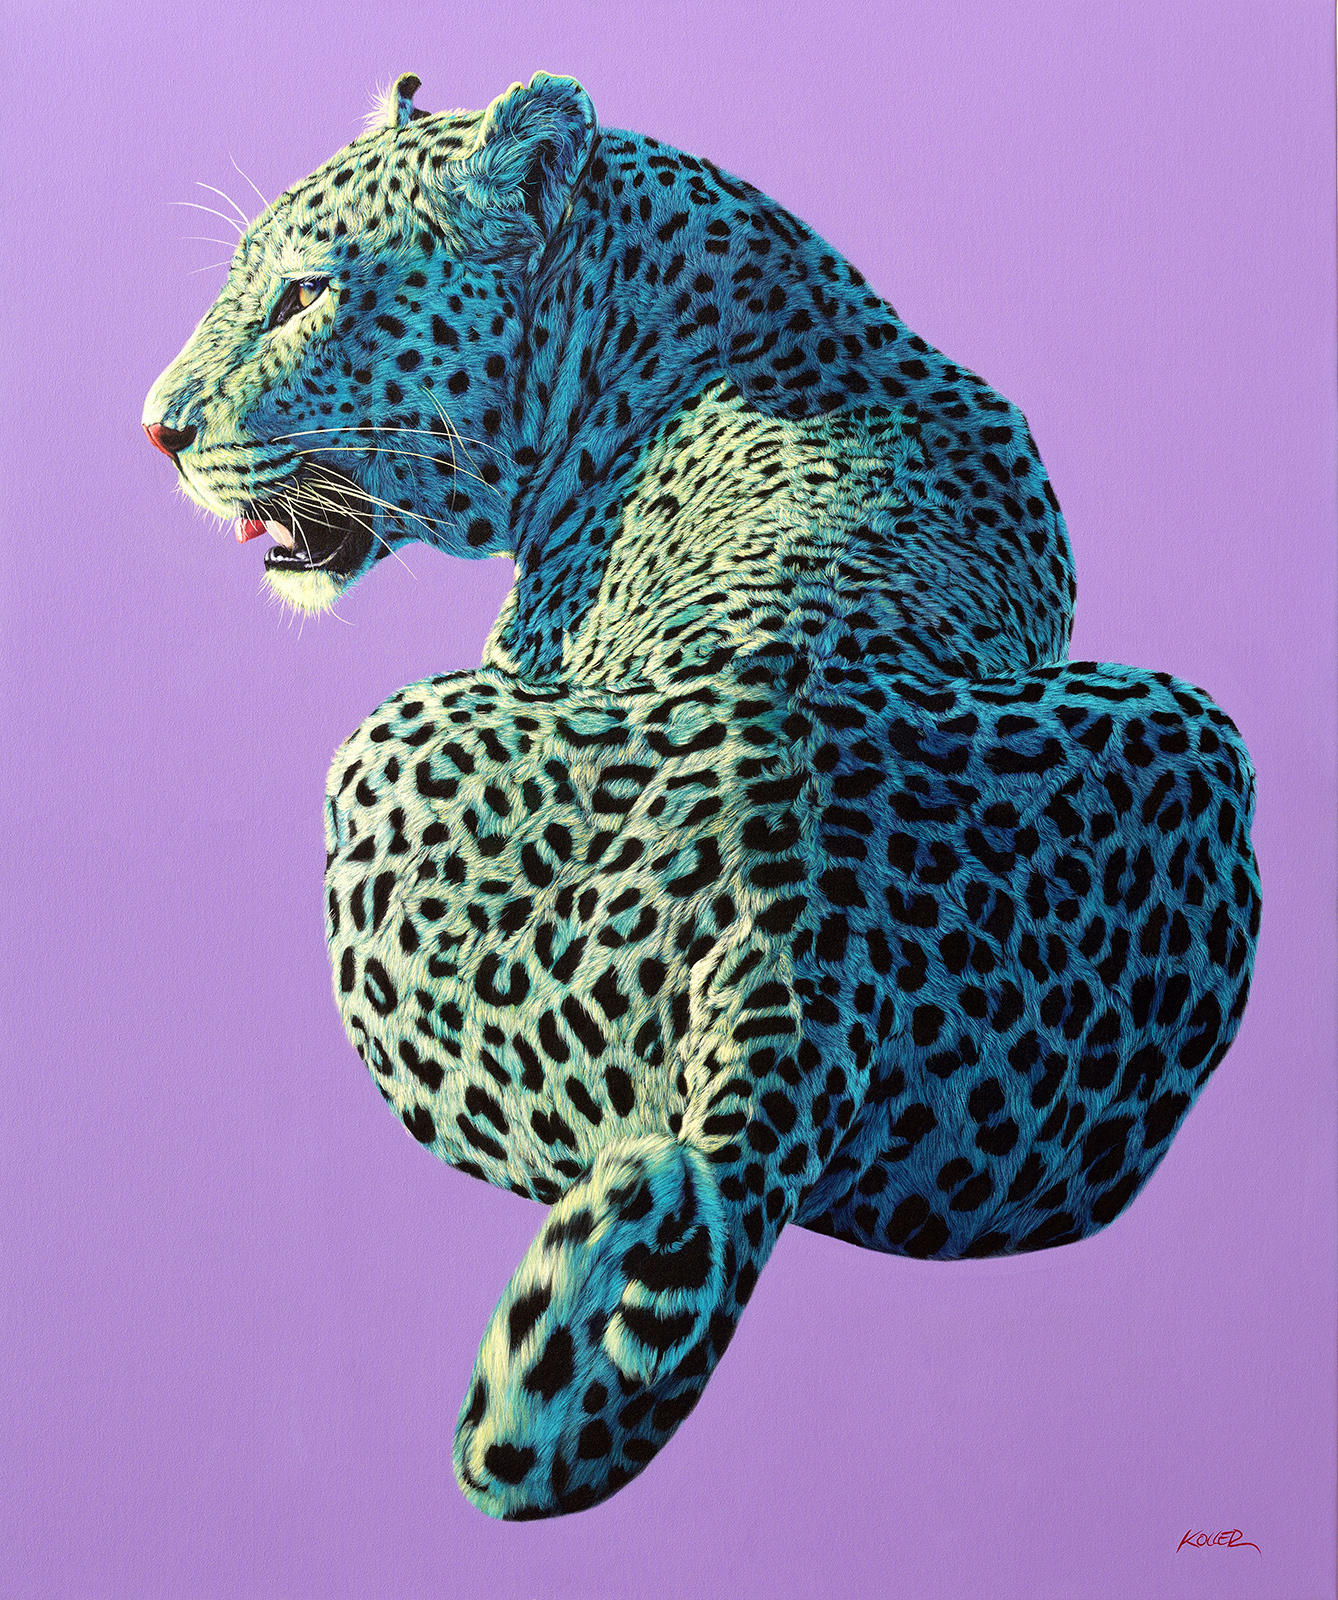 Helmut Koller, Leopard on Light Purple